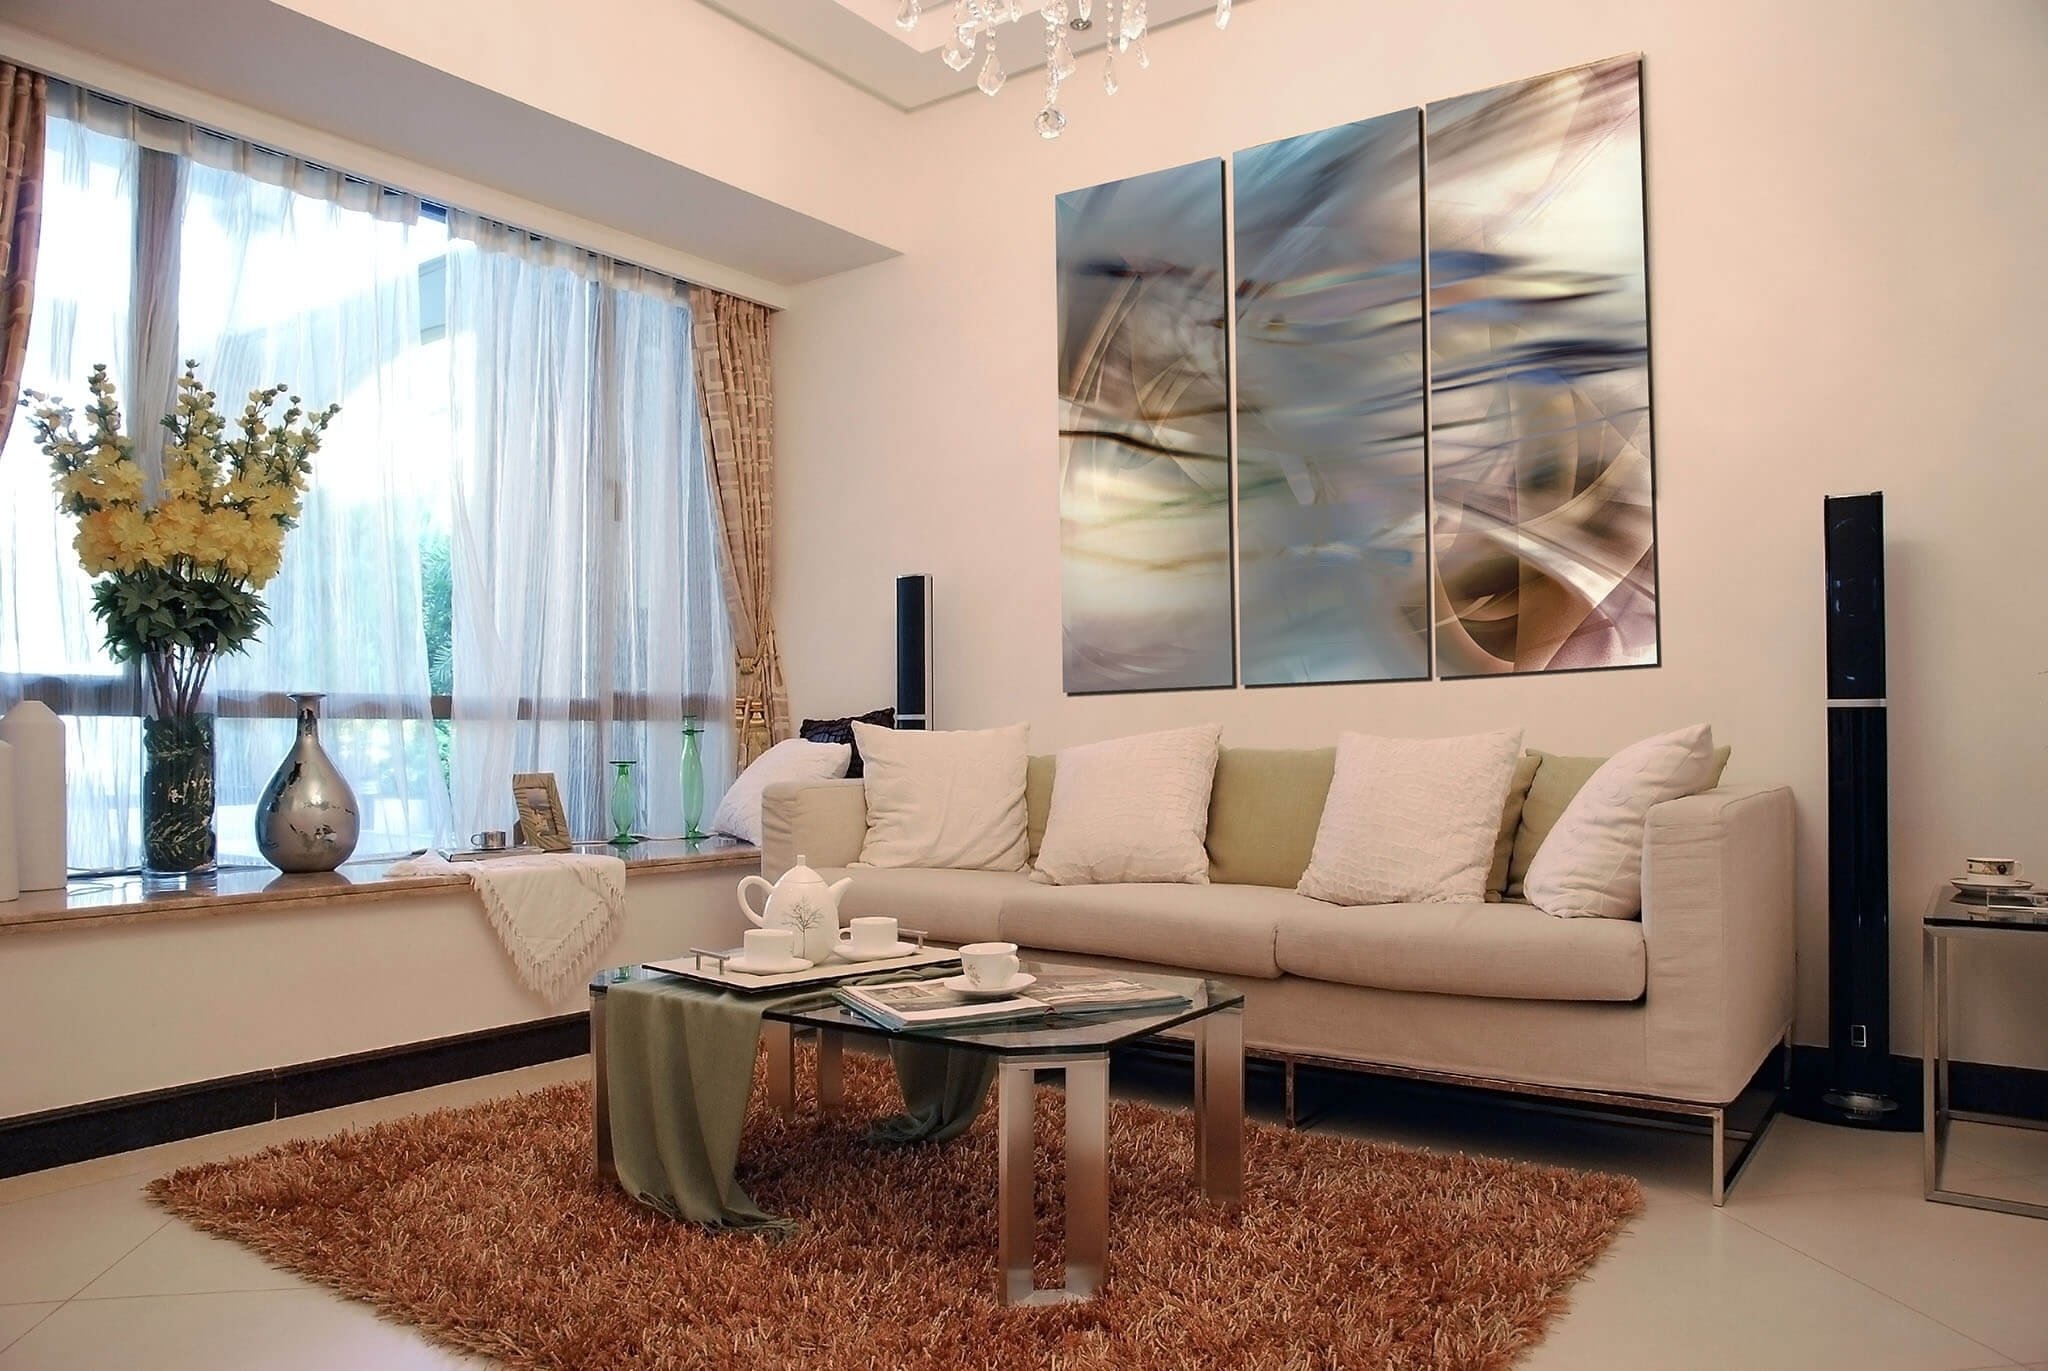 10 Elegant Wall Art For Living Room Ideas interior room wall art ideas marvellous for living decorating 2022